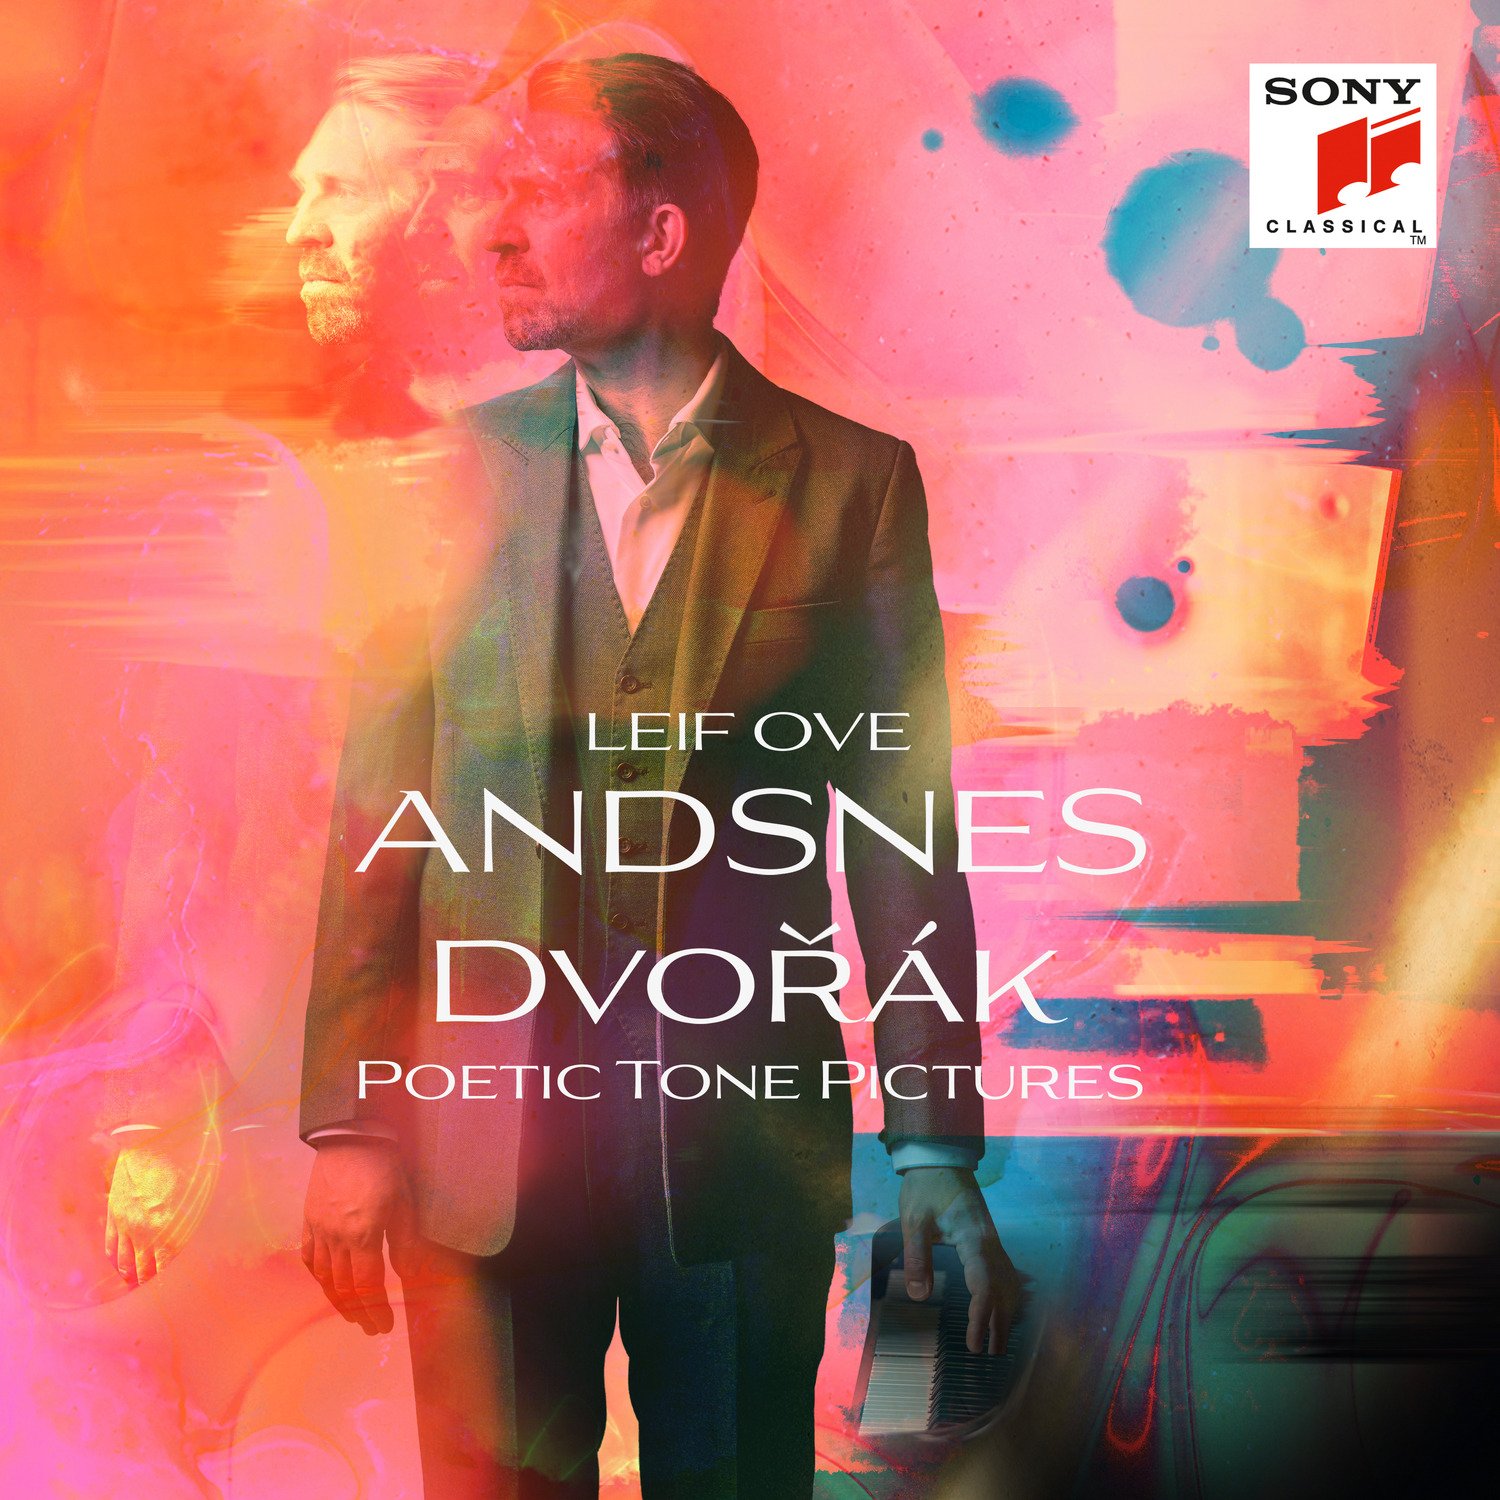 Andsnes, Leif Ove - Dvorák: Poetic Tone Pictures, Op.85, Vinyl